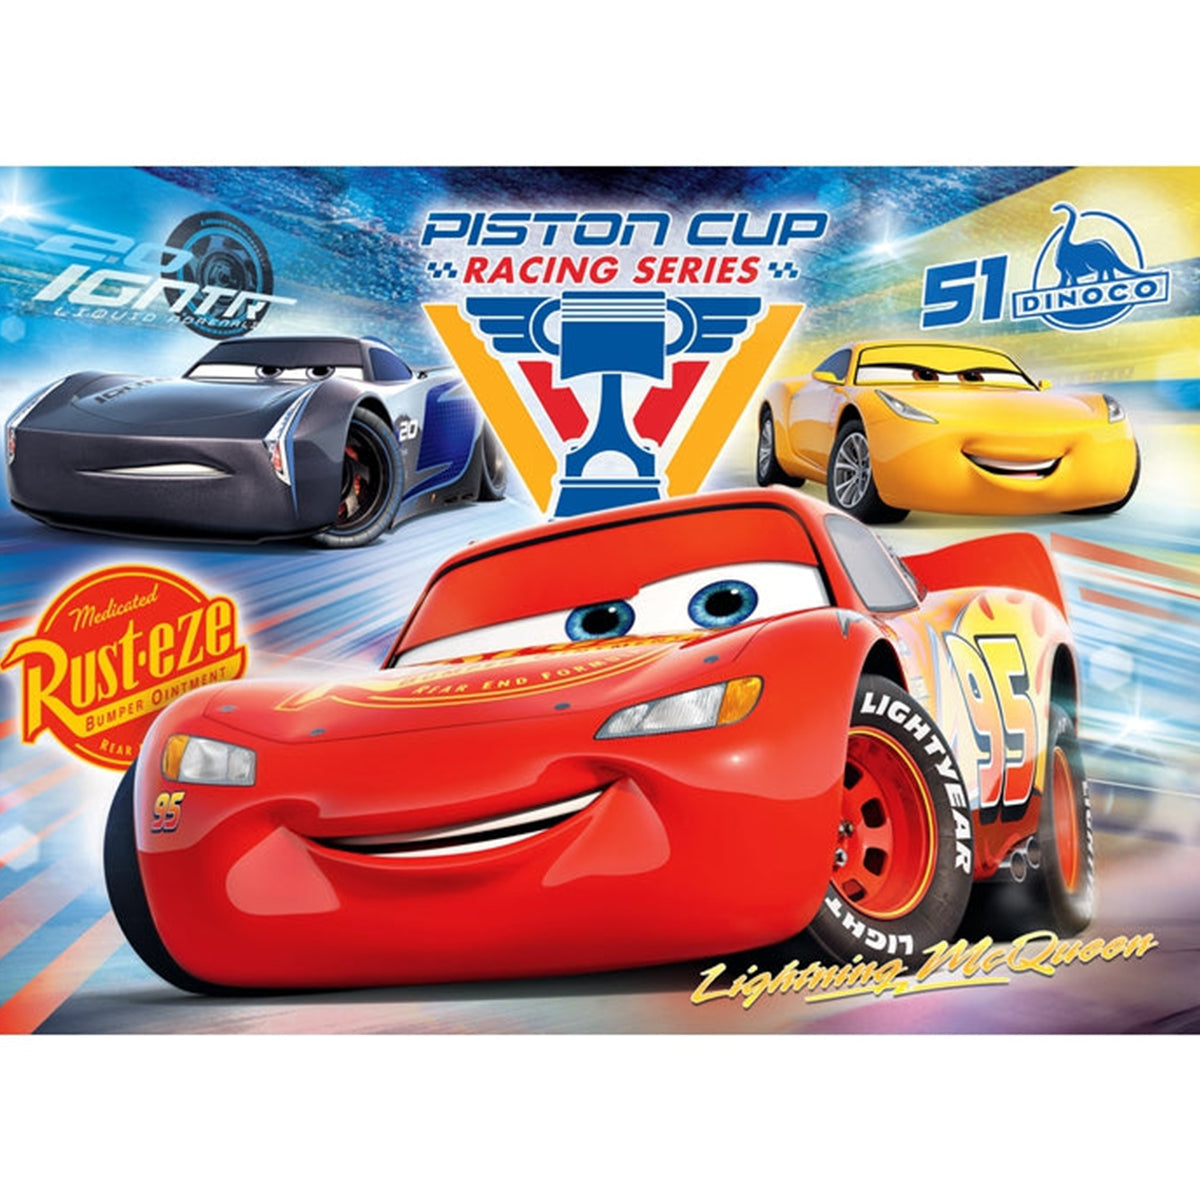 Clementoni - Disney Cars 104 Pcs - Super Color Puzzle